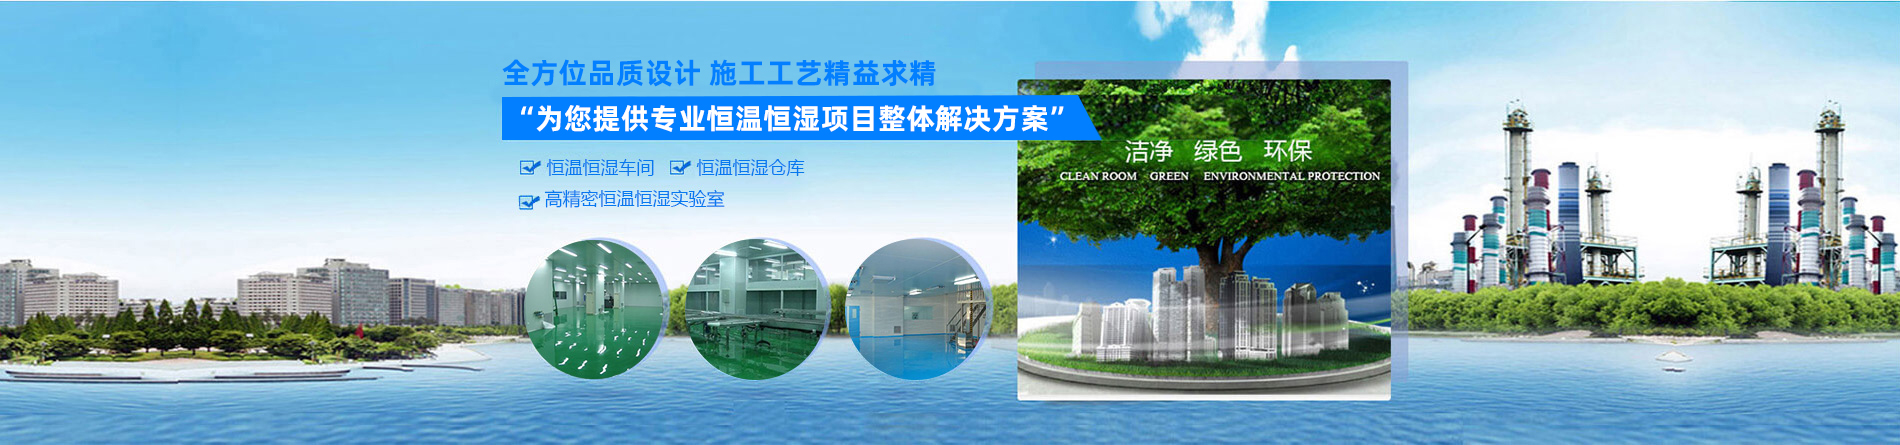 东莞市米6体育（中国）科技有限公司官网空调机电设备有限公司